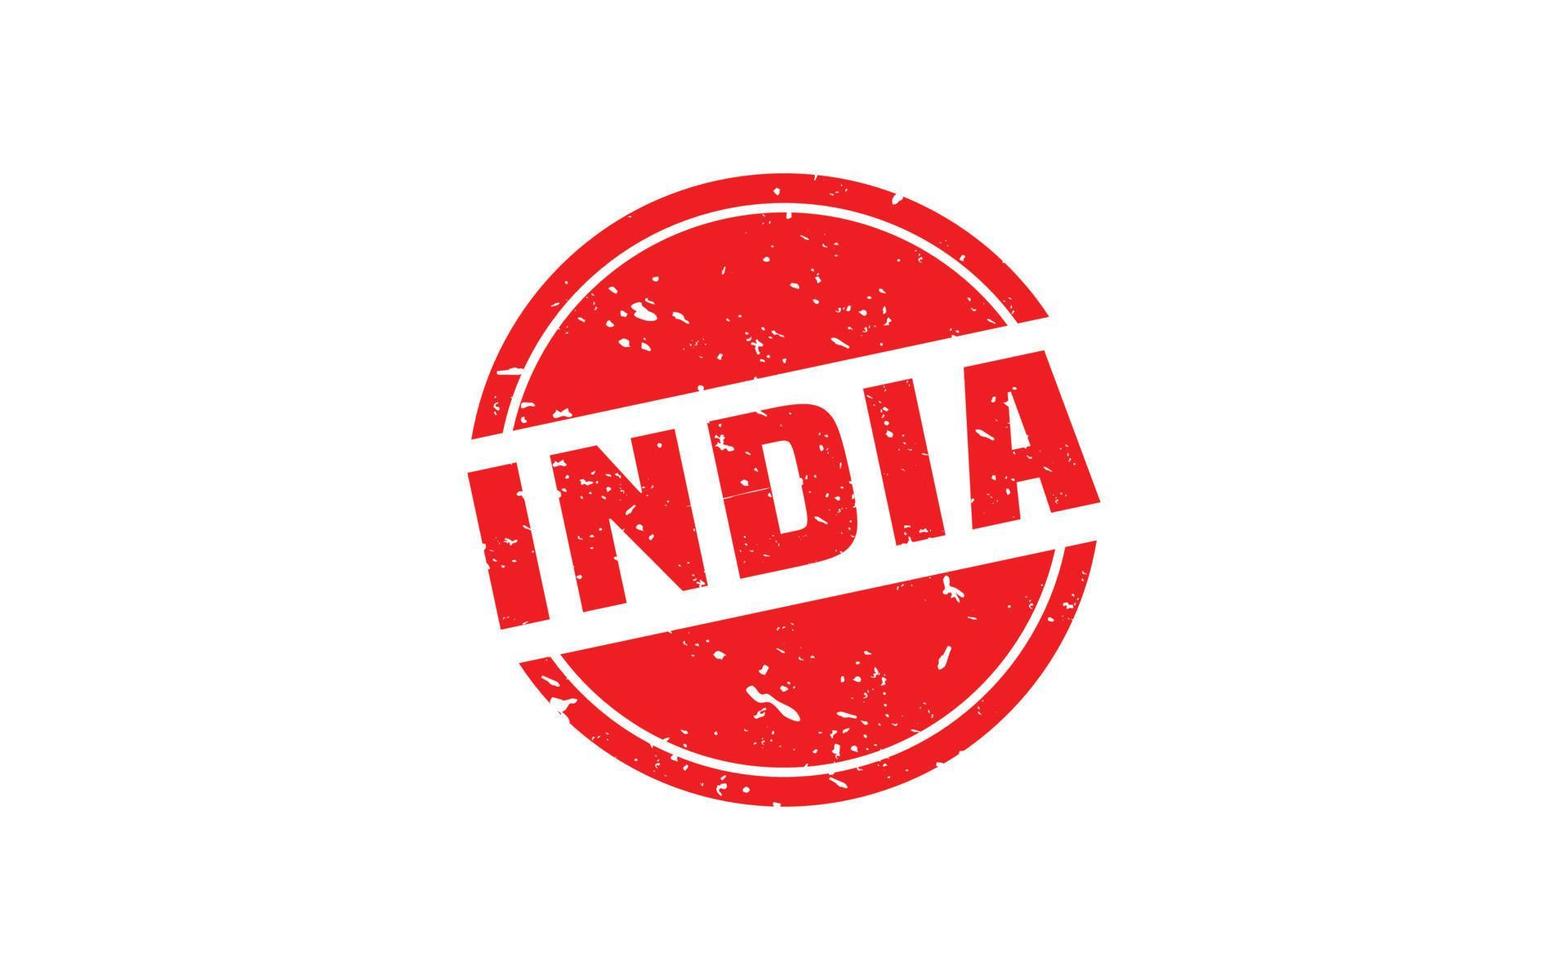 Caoutchouc de timbre de l'Inde avec style grunge sur fond blanc vecteur